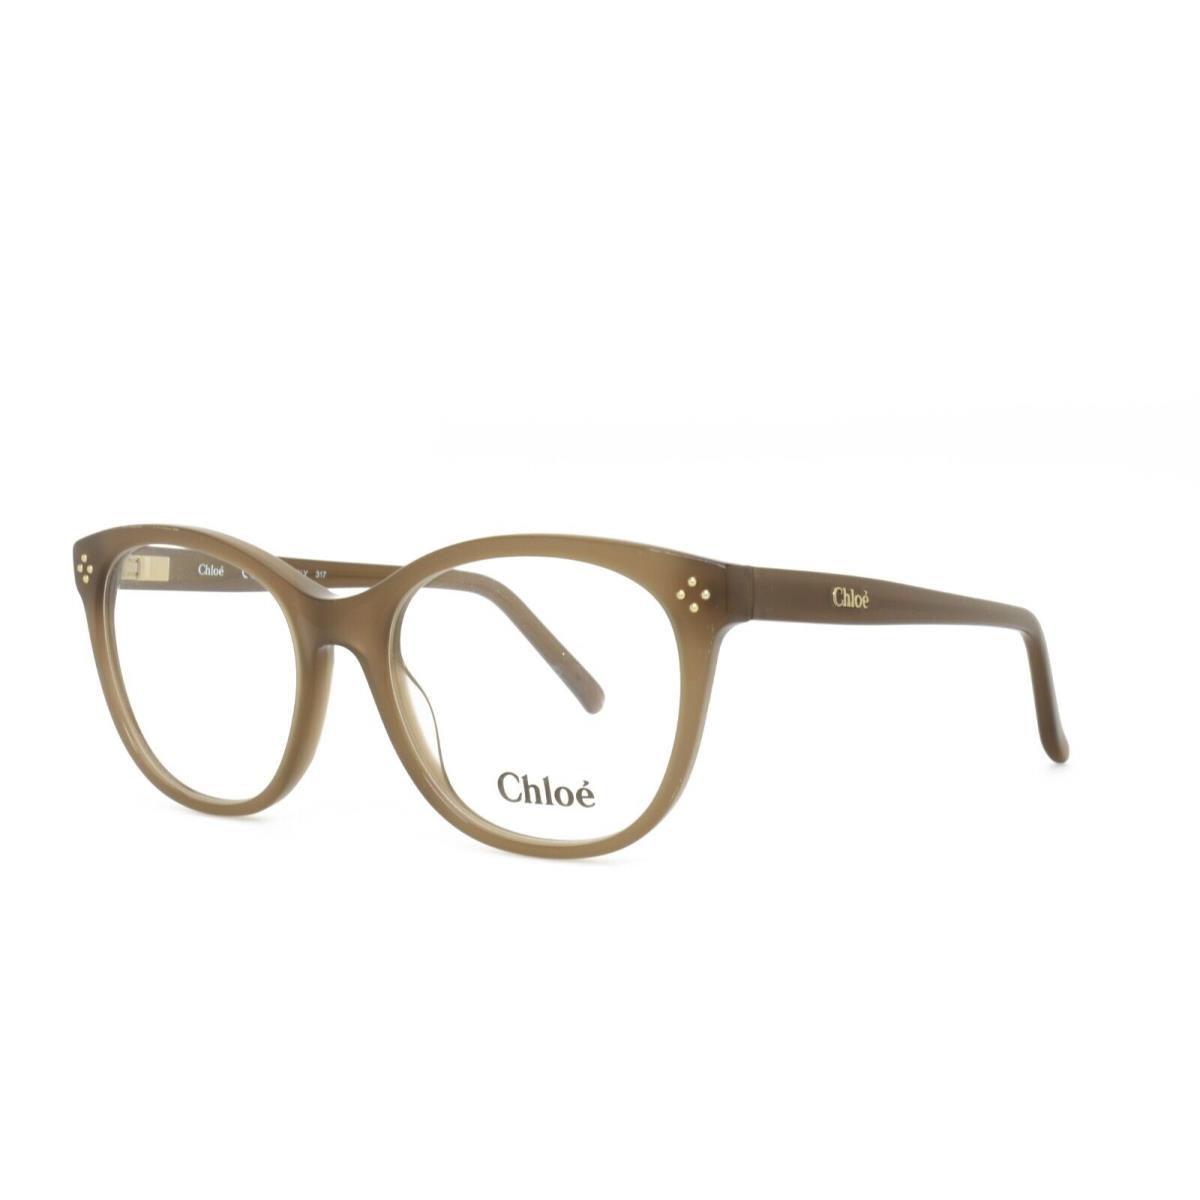 Chloe 2674 272 Eyeglasses 52-18-140 Brown